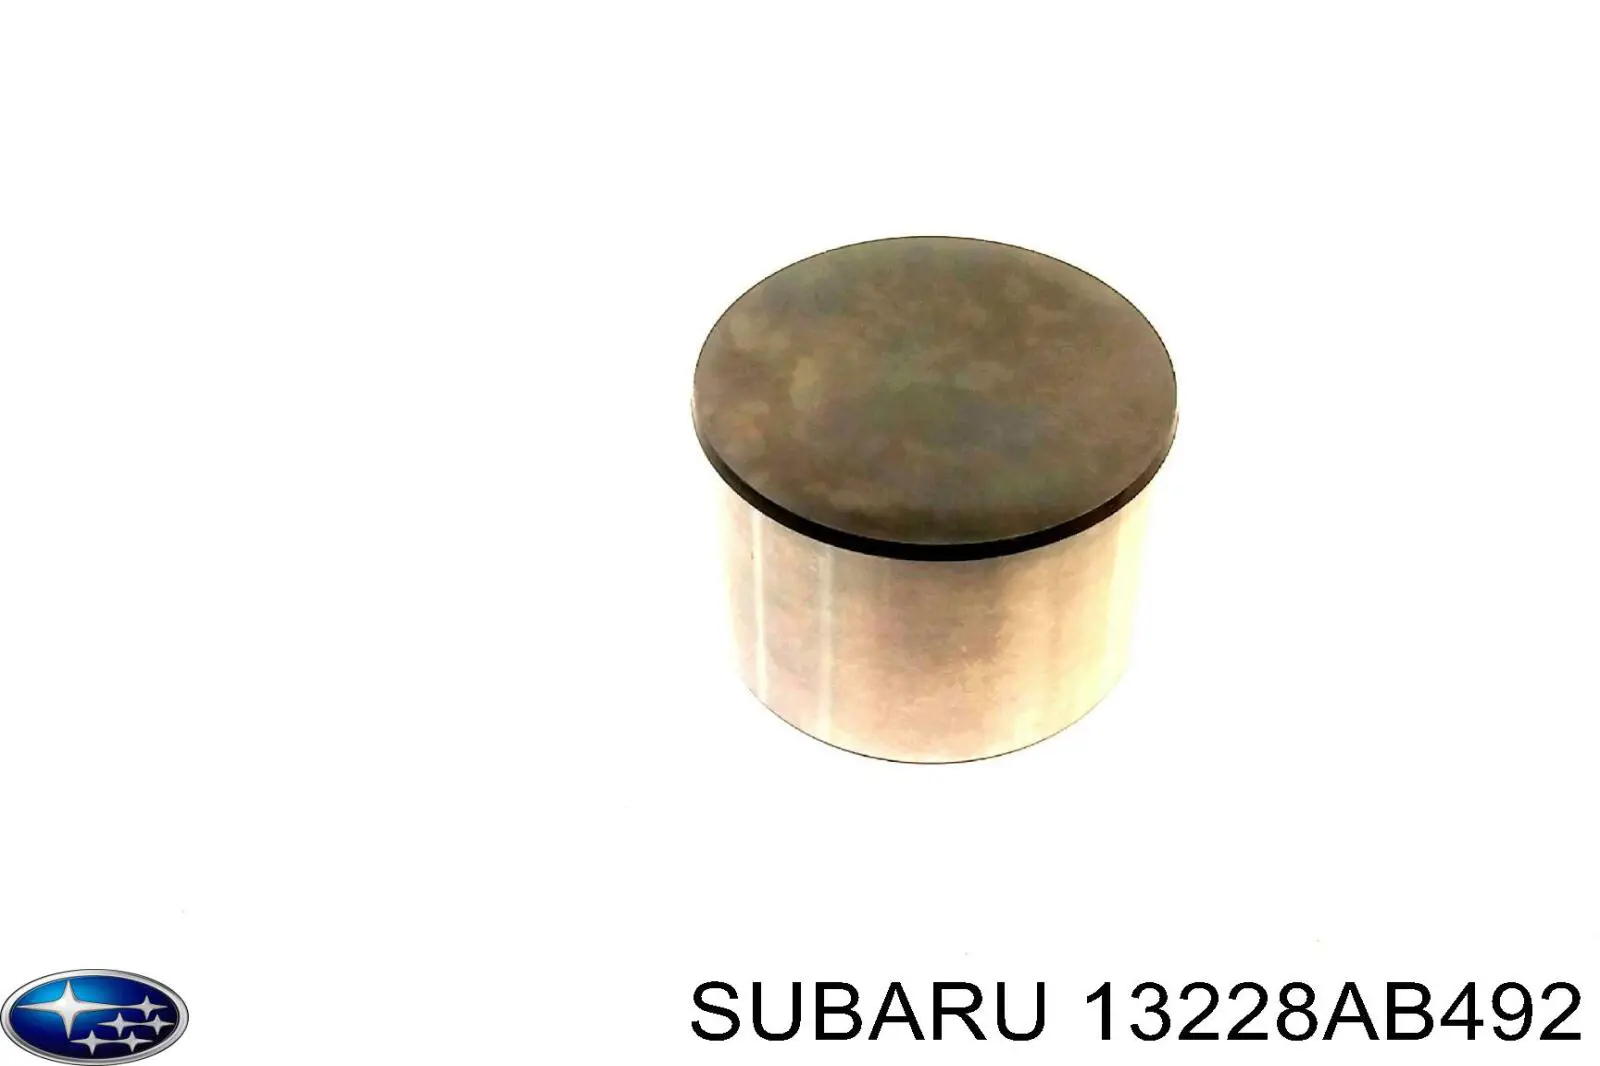 Гидрокомпенсатор (гидротолкатель), толкатель клапанов Subaru 13228AB492